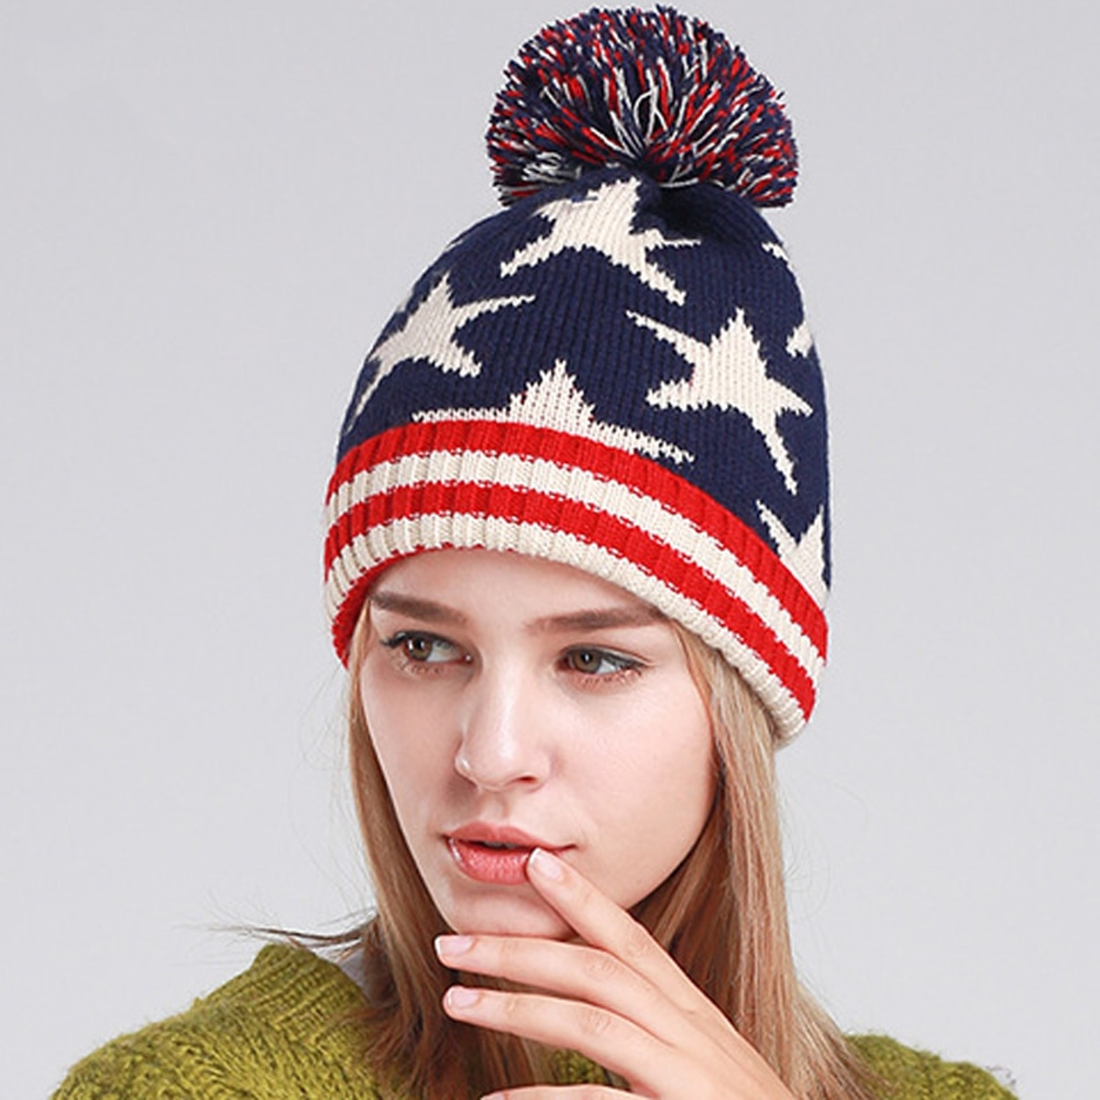 Women's Winter Warm Stretchy Hat With Pompom